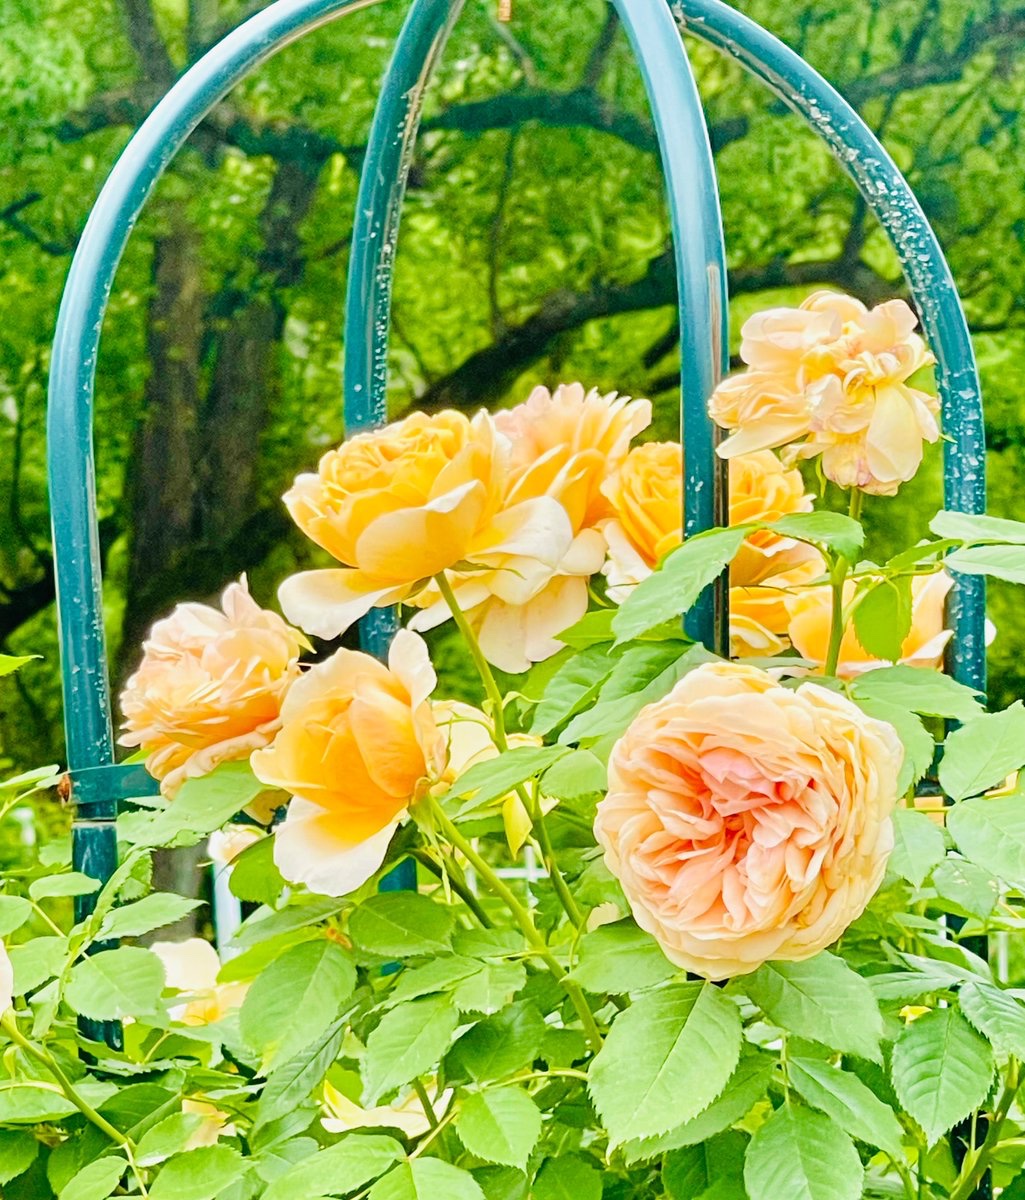 💚新緑と薔薇のコラボ💛
✨眩しい初夏の美しさに心癒されます✨
#京都よきかな  💐【京都府立植物園】
※ 今週日曜(5/12)は👩母の日『無料開園』